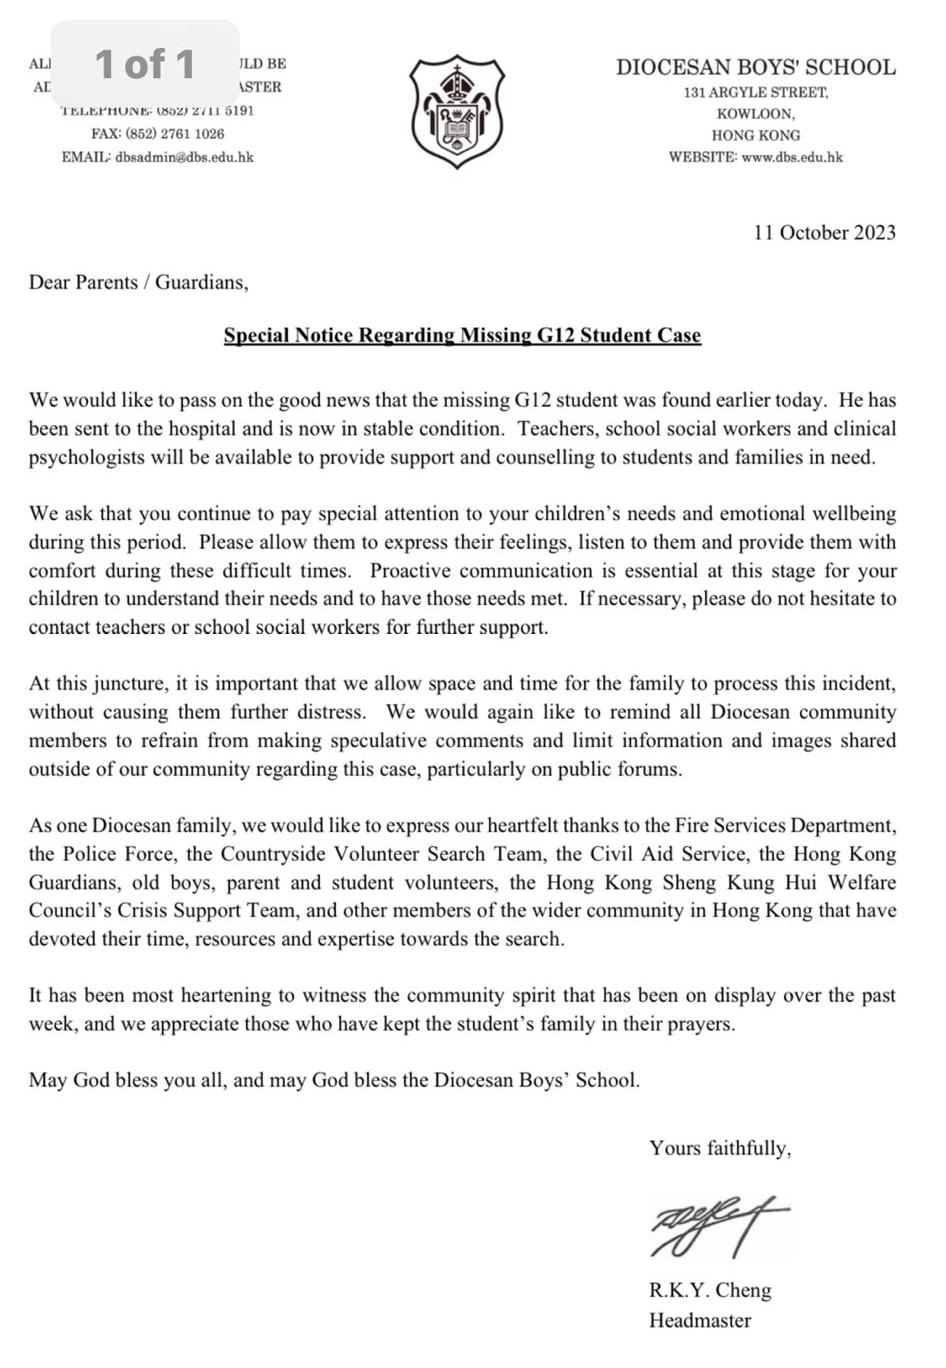 拔萃男書院校長鄭基恩向家長發通告，公佈曾憲哲安全獲救消息。